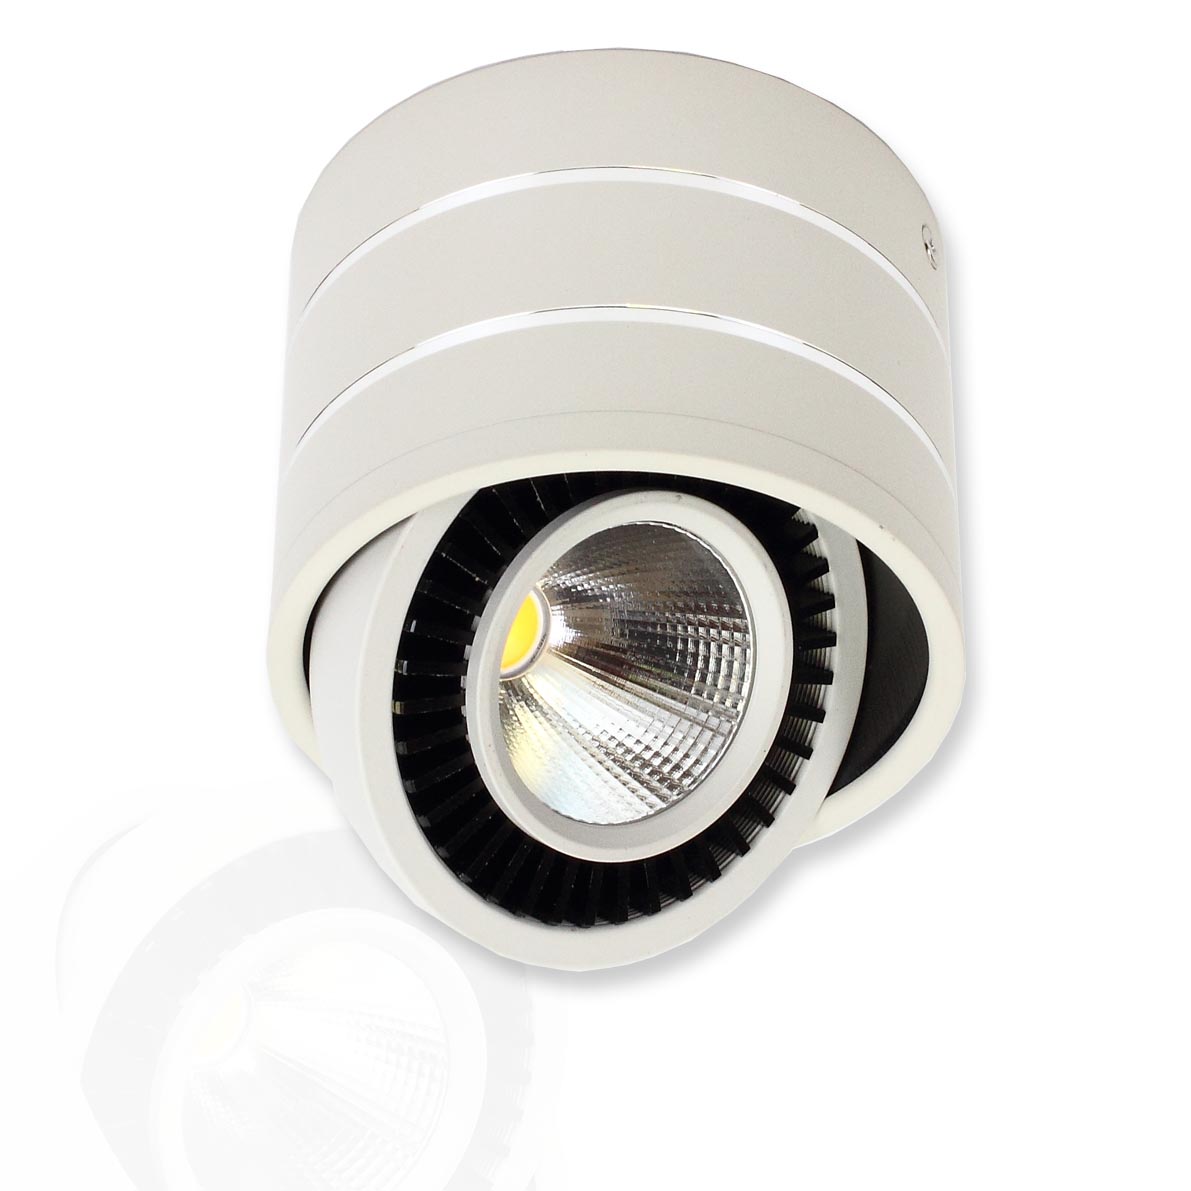 Светодиодные светильники Светодиодный светильник JH151-15W B793 (15W, warm white)